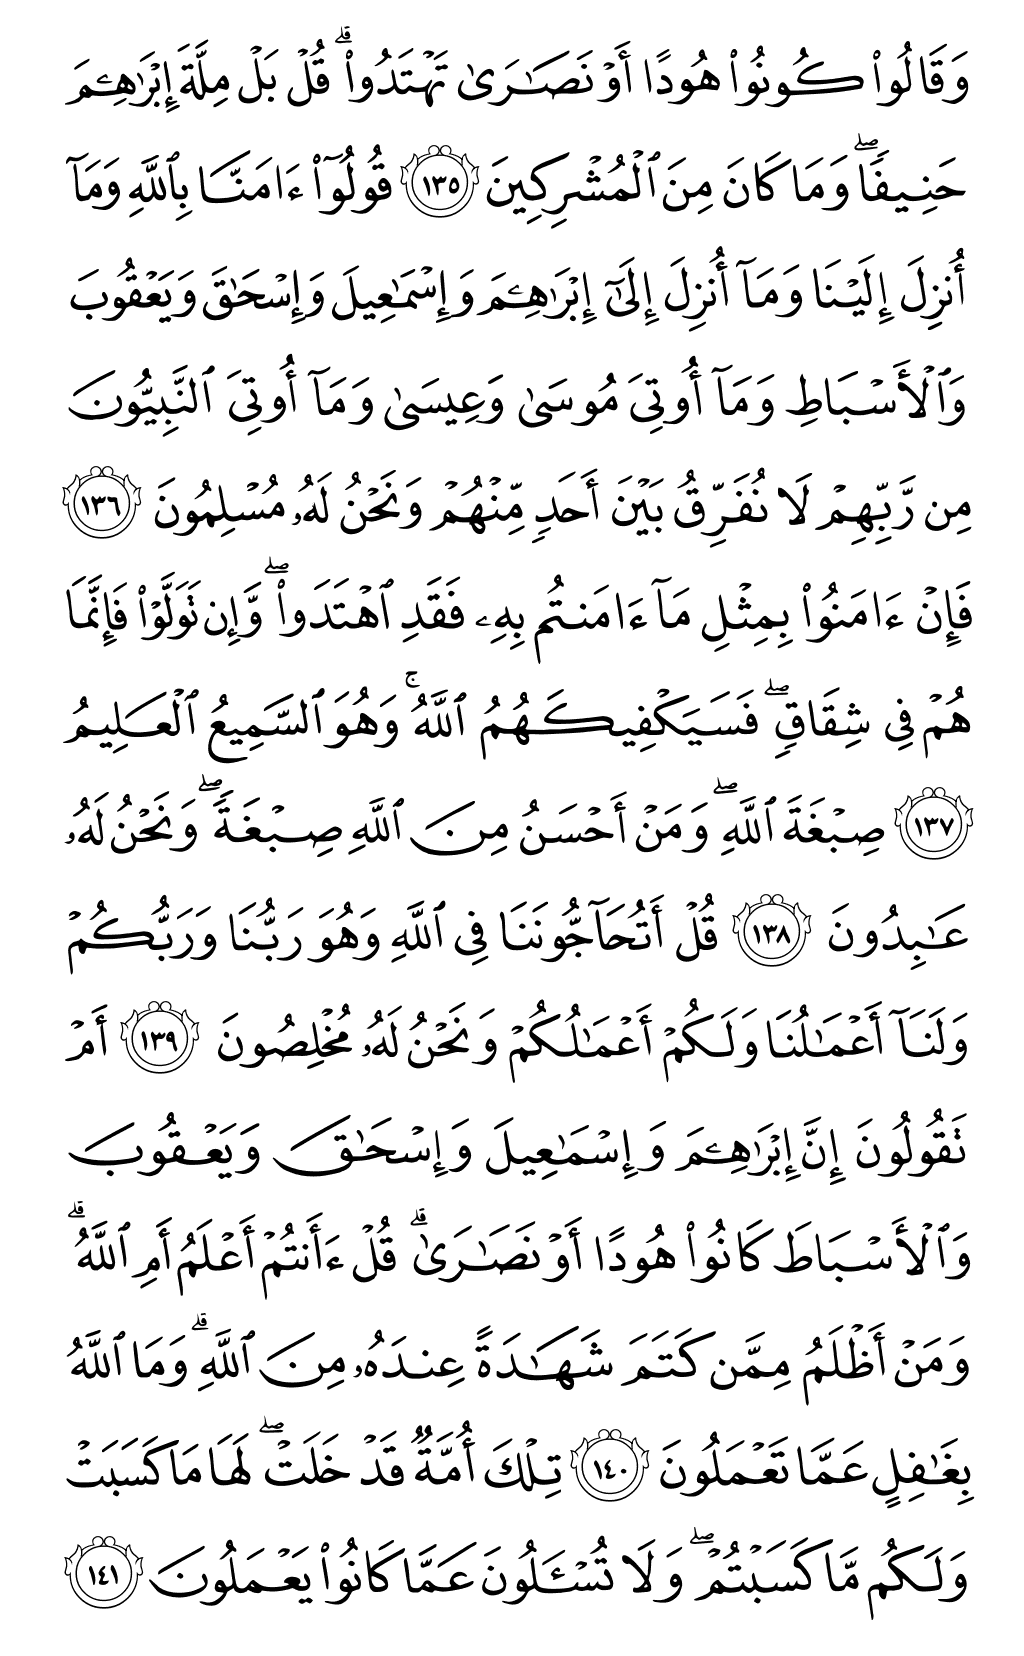 الصفحة رقم 21 من القرآن الكريم